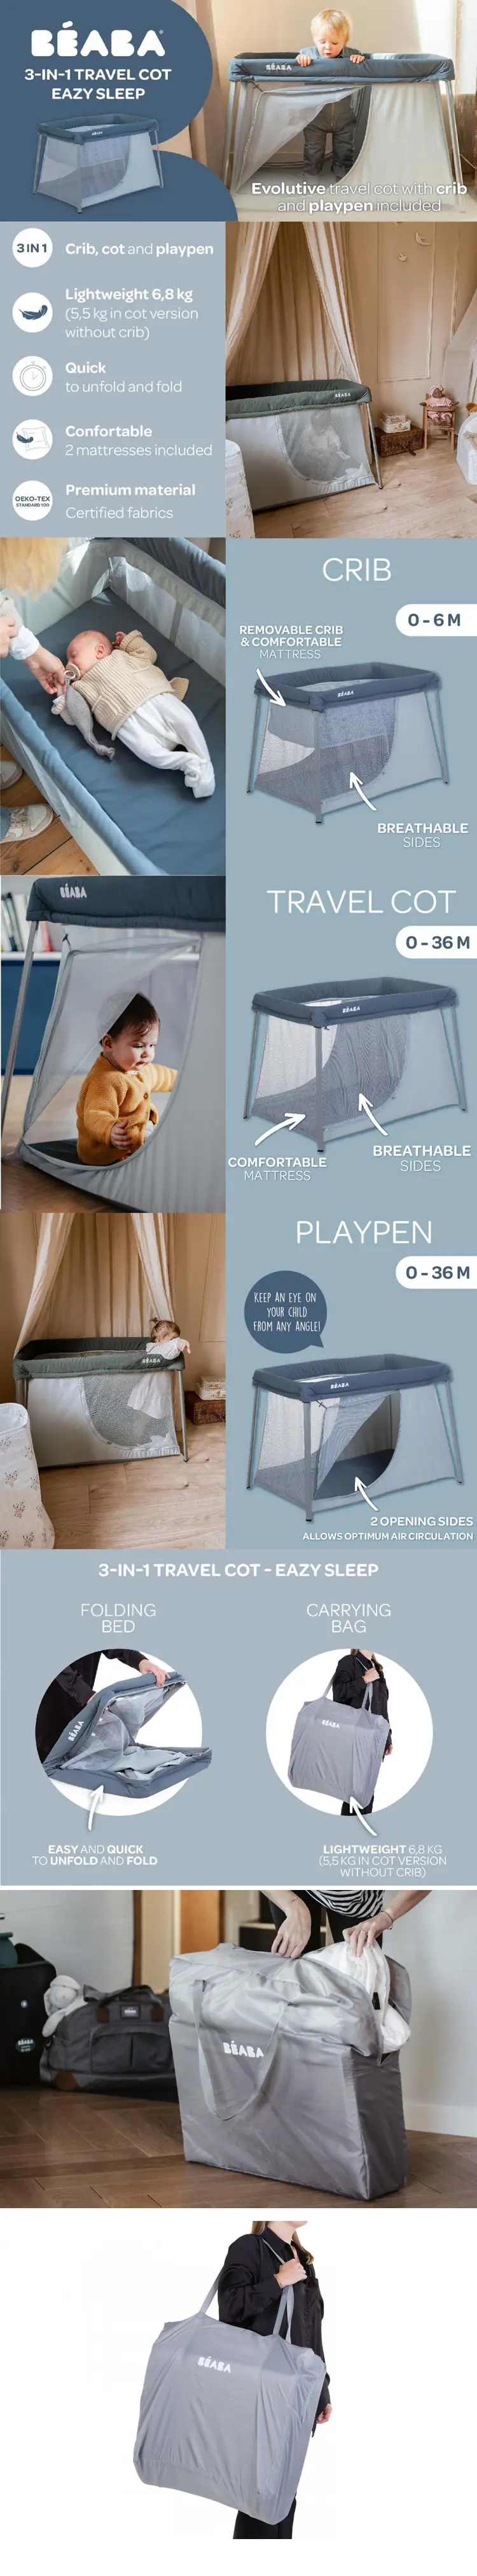 BEABA Eazy Sleep 三合一便携婴儿玩乐游戏床